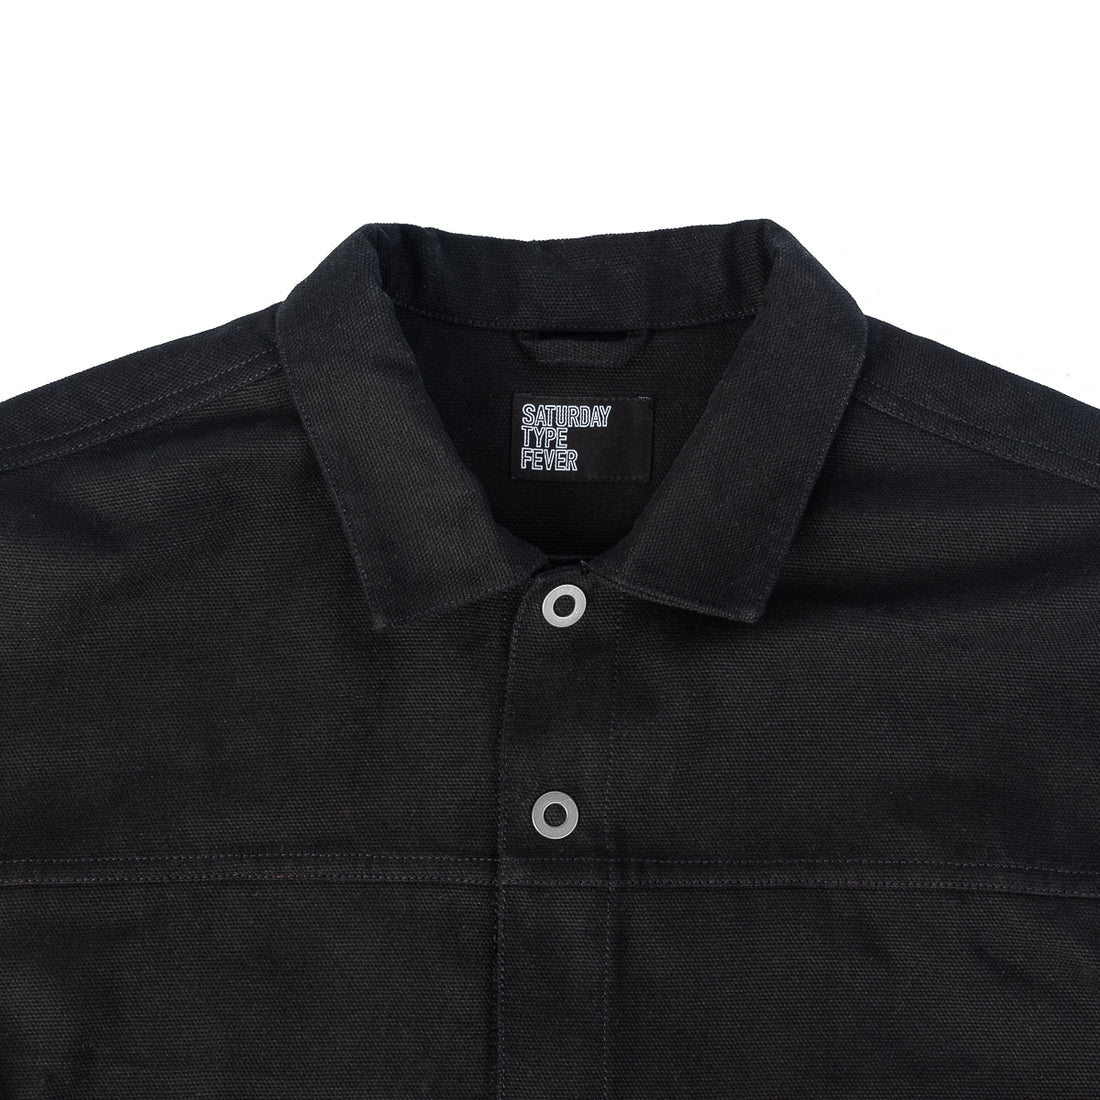 SaturdayTypeFever 9oz Black Cotton Shirt Black71